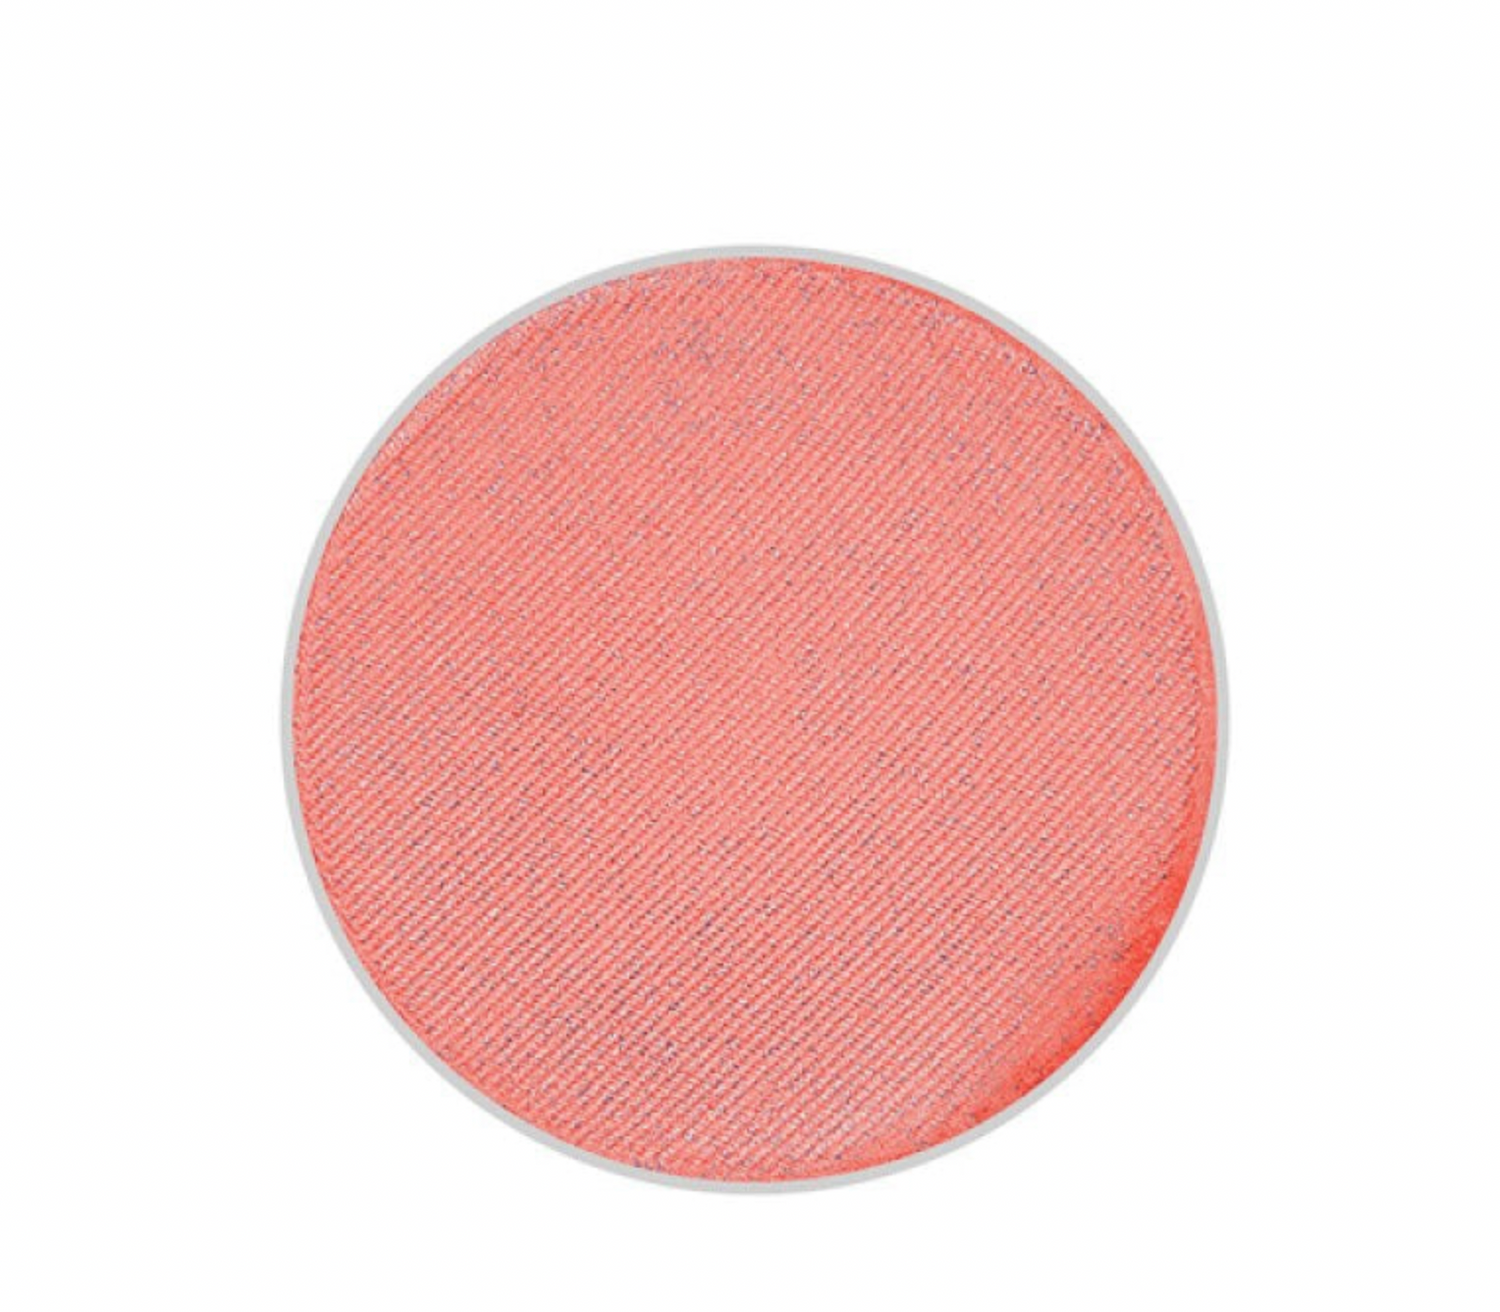 Georgia Peach Mineral Blush